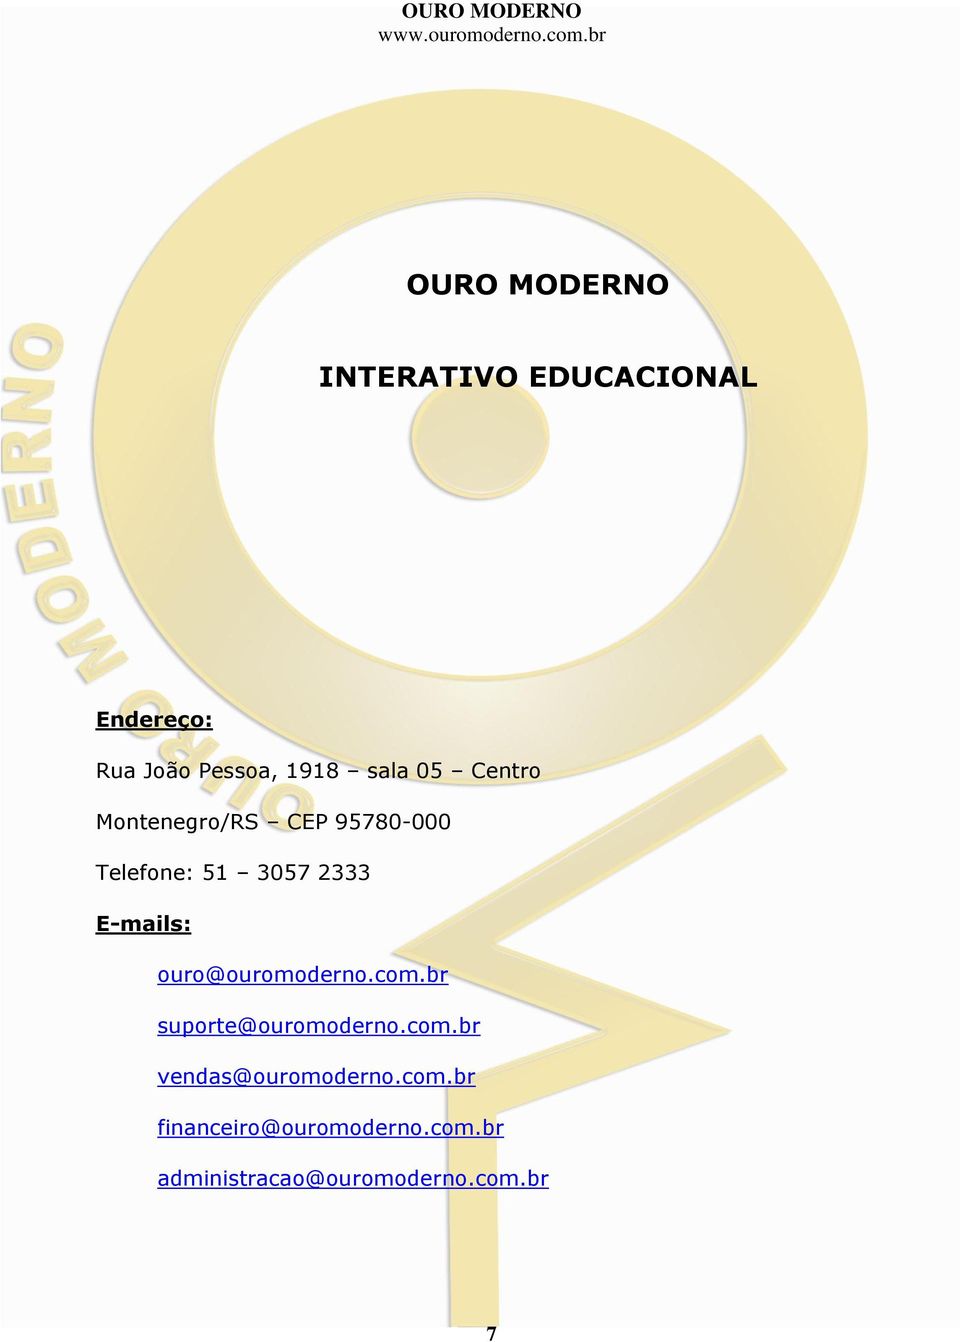 E-mails: ouro@ouromoderno.com.br suporte@ouromoderno.com.br vendas@ouromoderno.